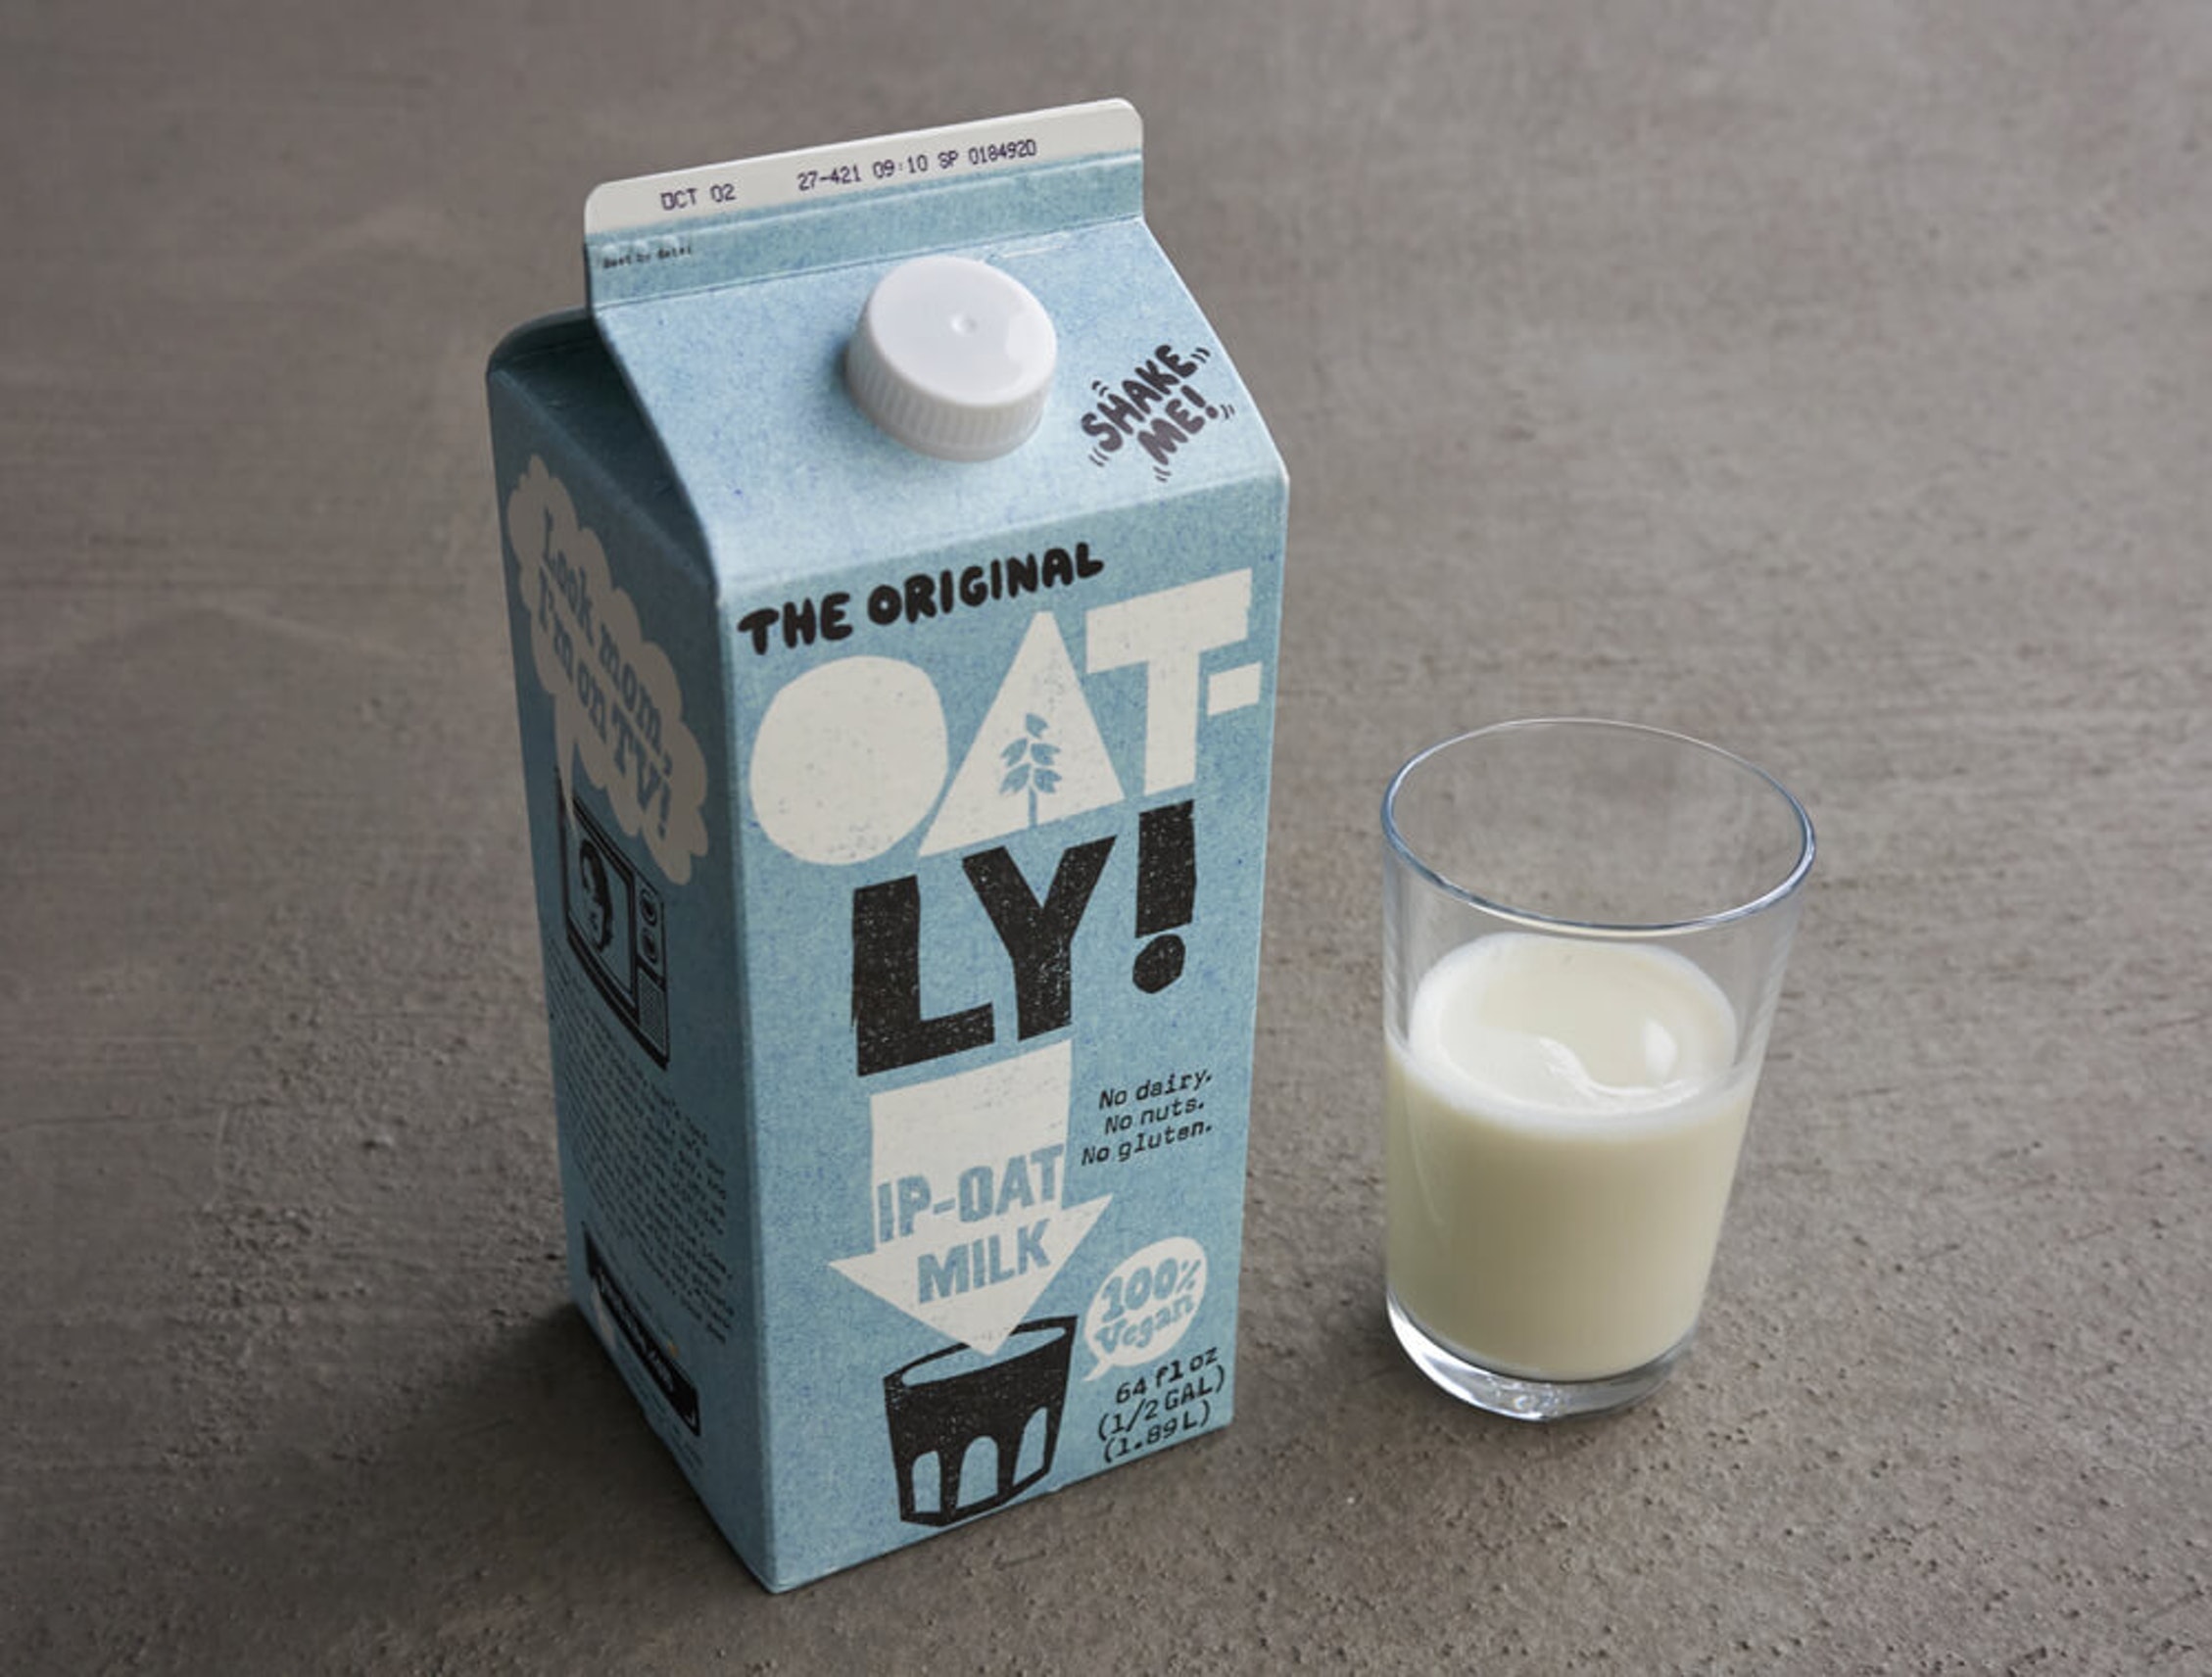 Warm welcome for oat milk maker Oatly in Wall Street debut